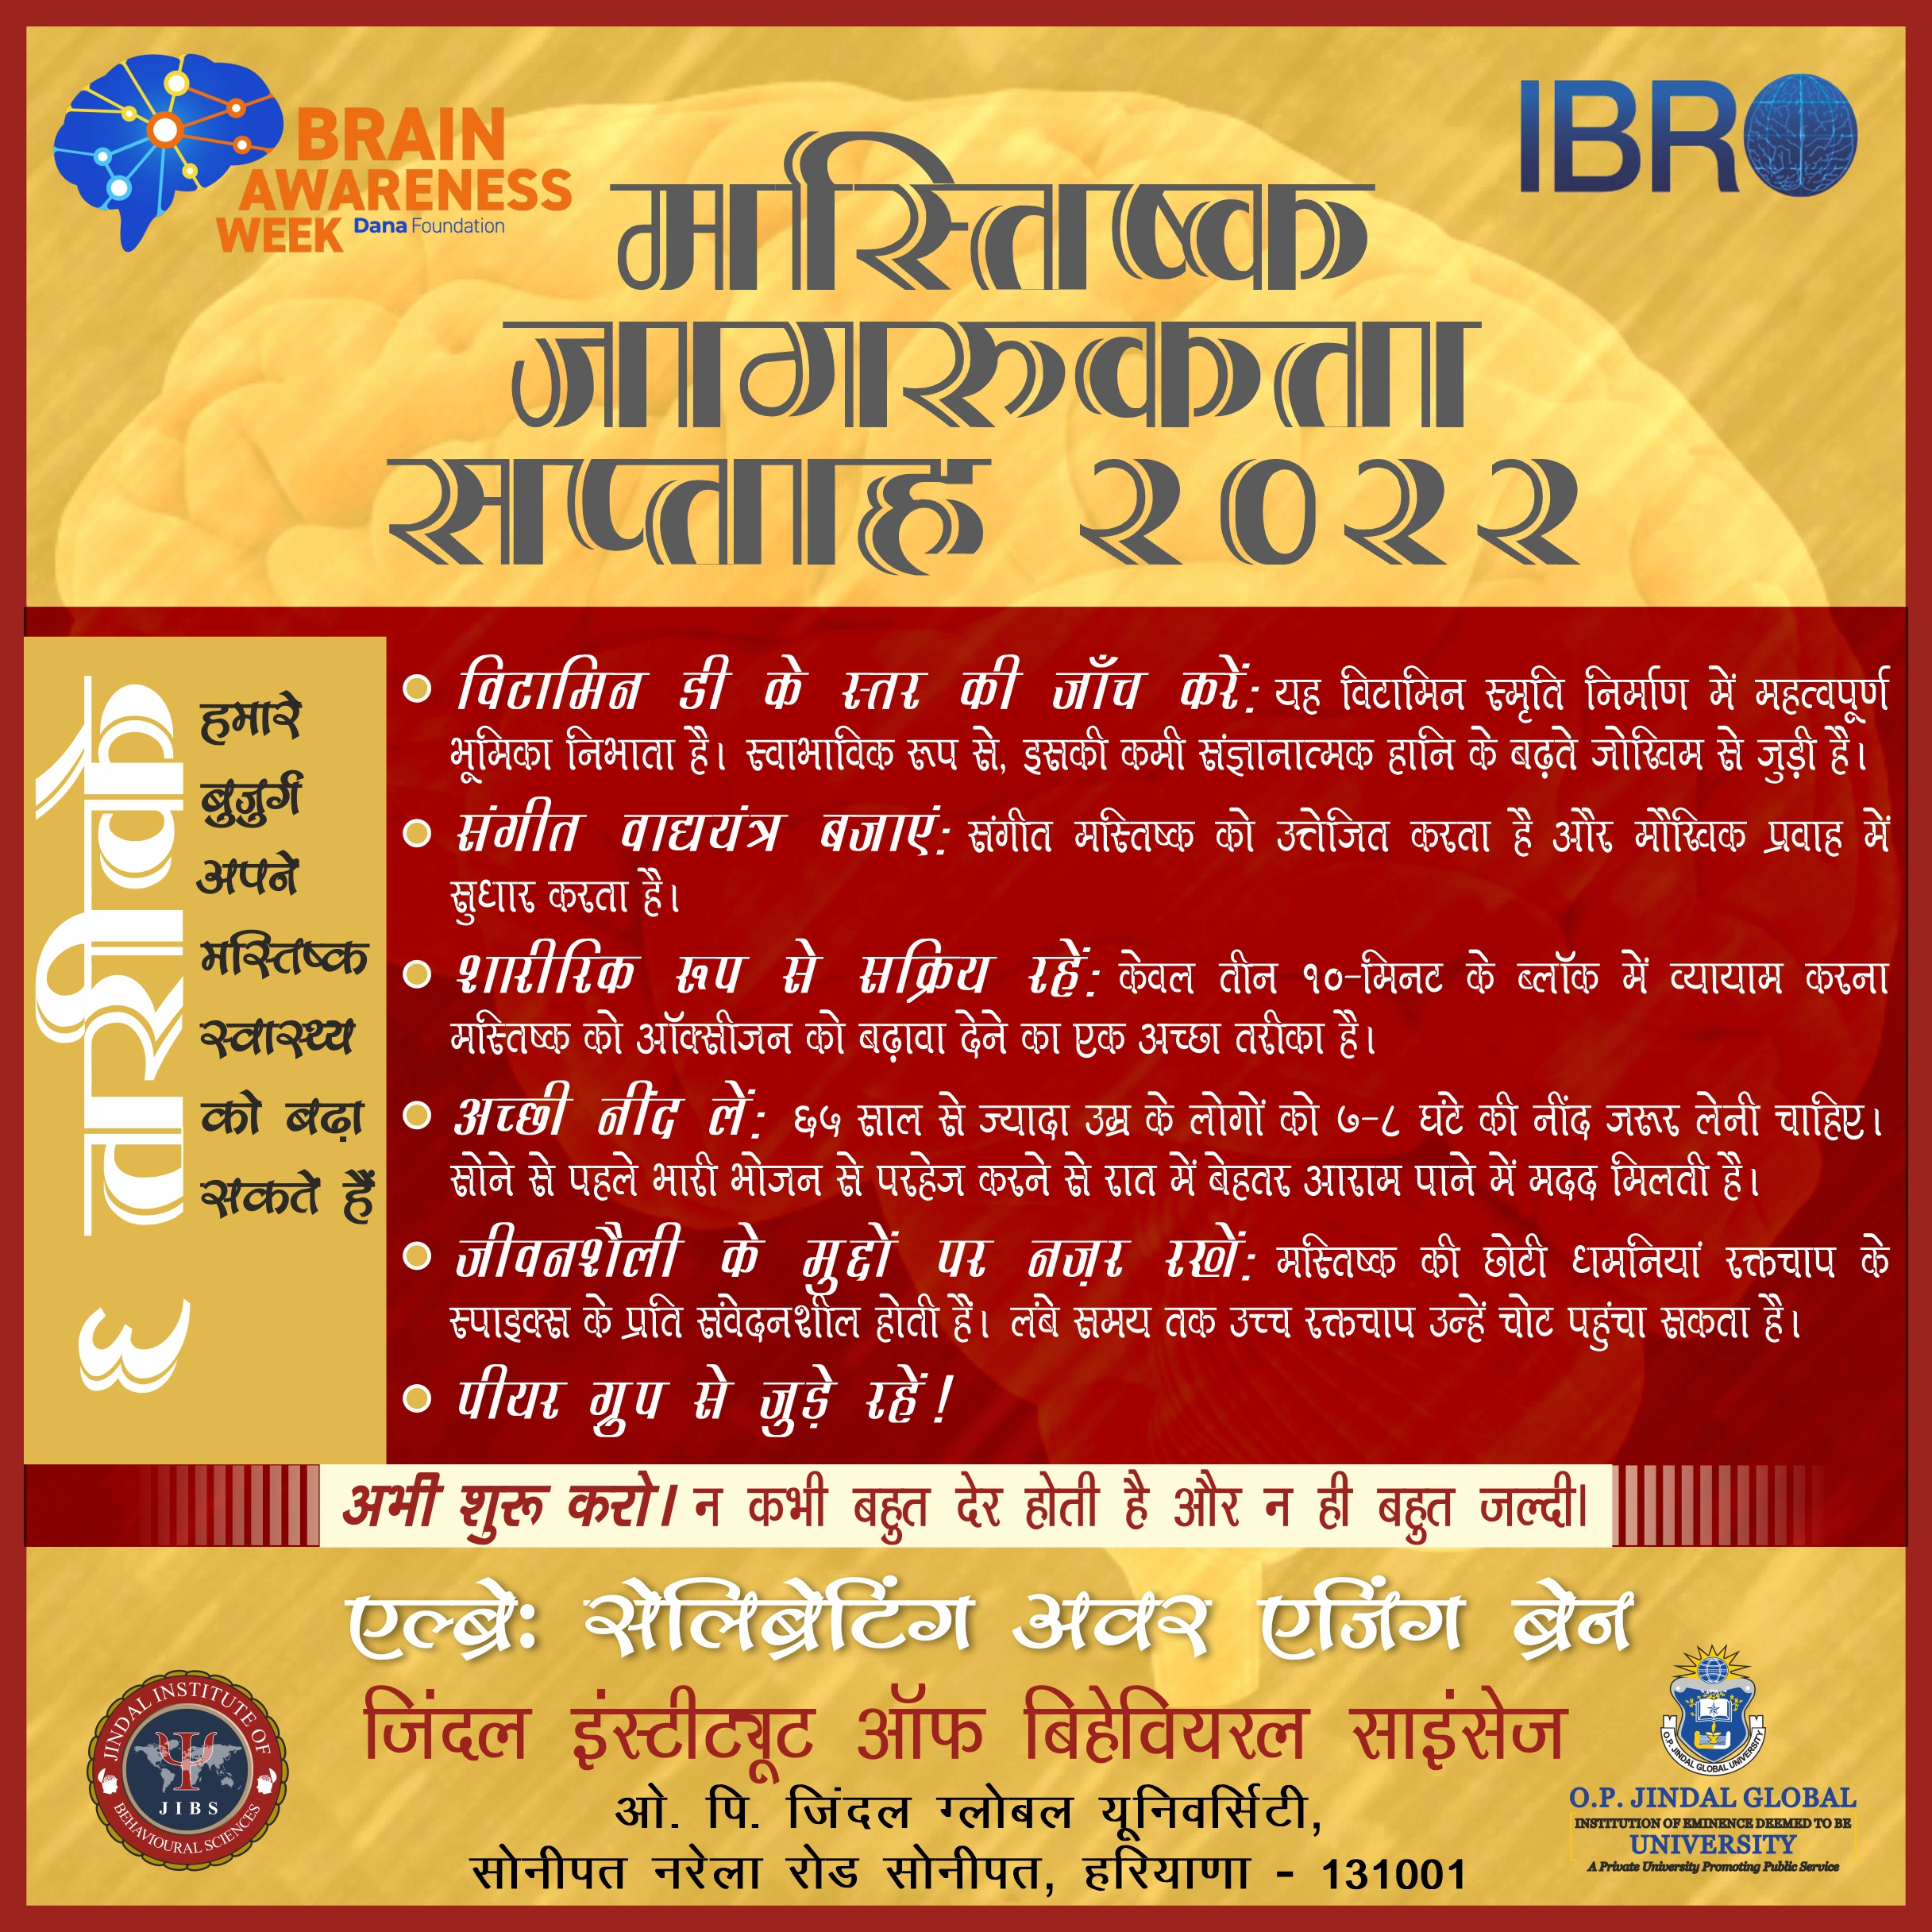 Poster 2 - Brain Awareness Week 2022 (Hindi) copy